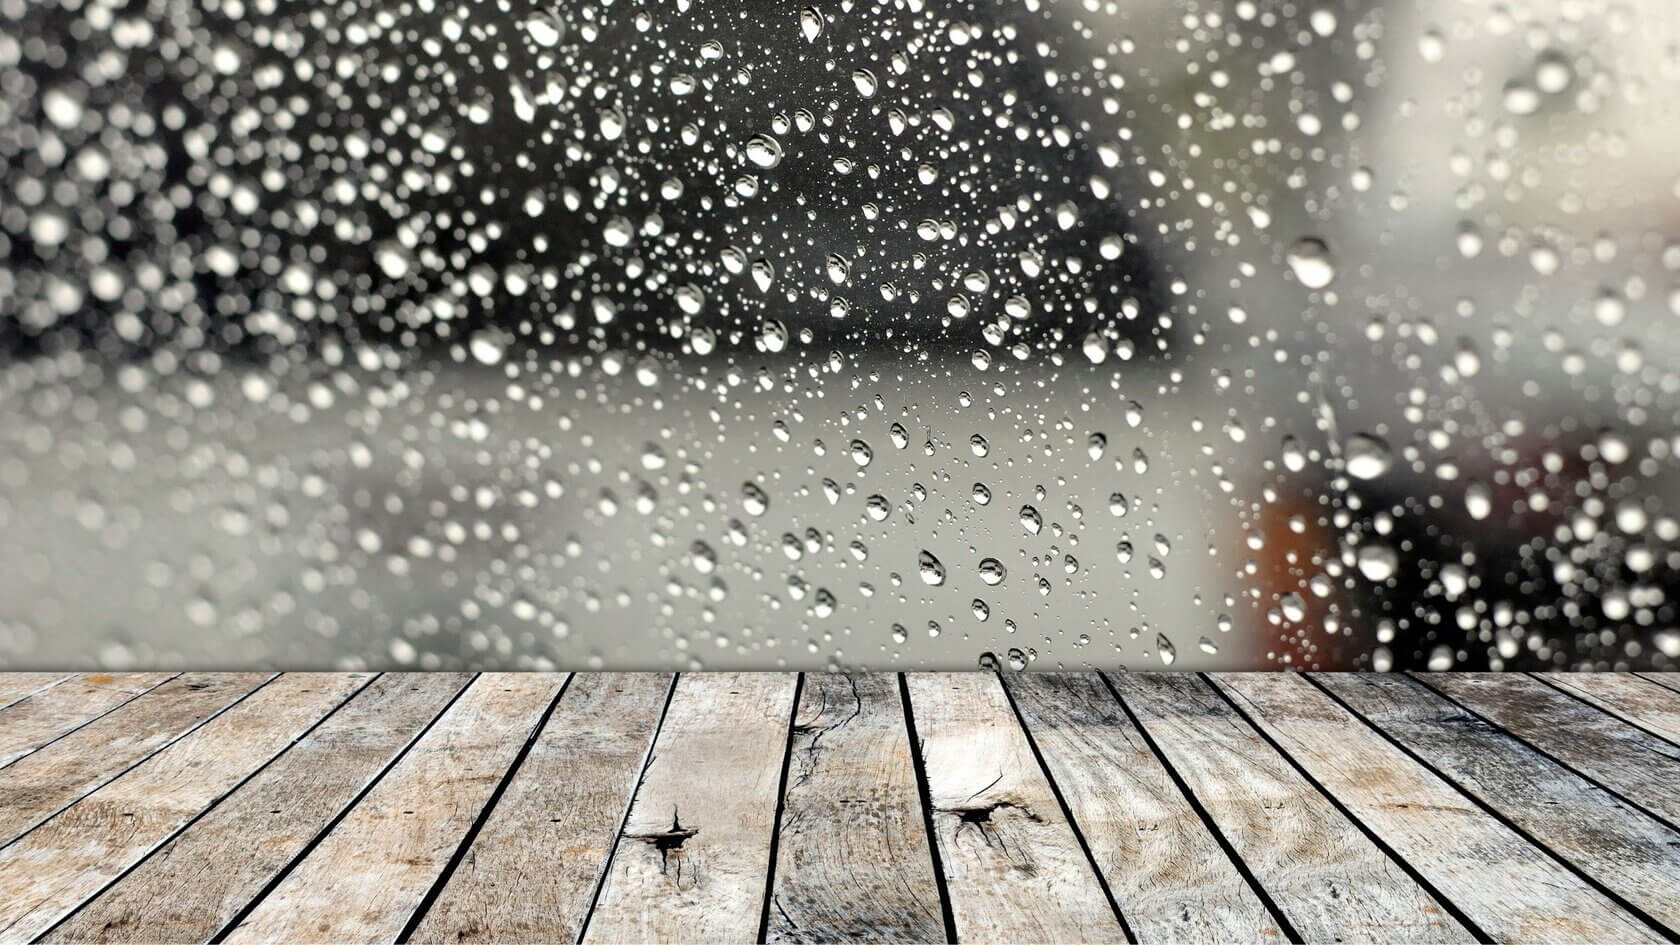 Hardwood floor and rain